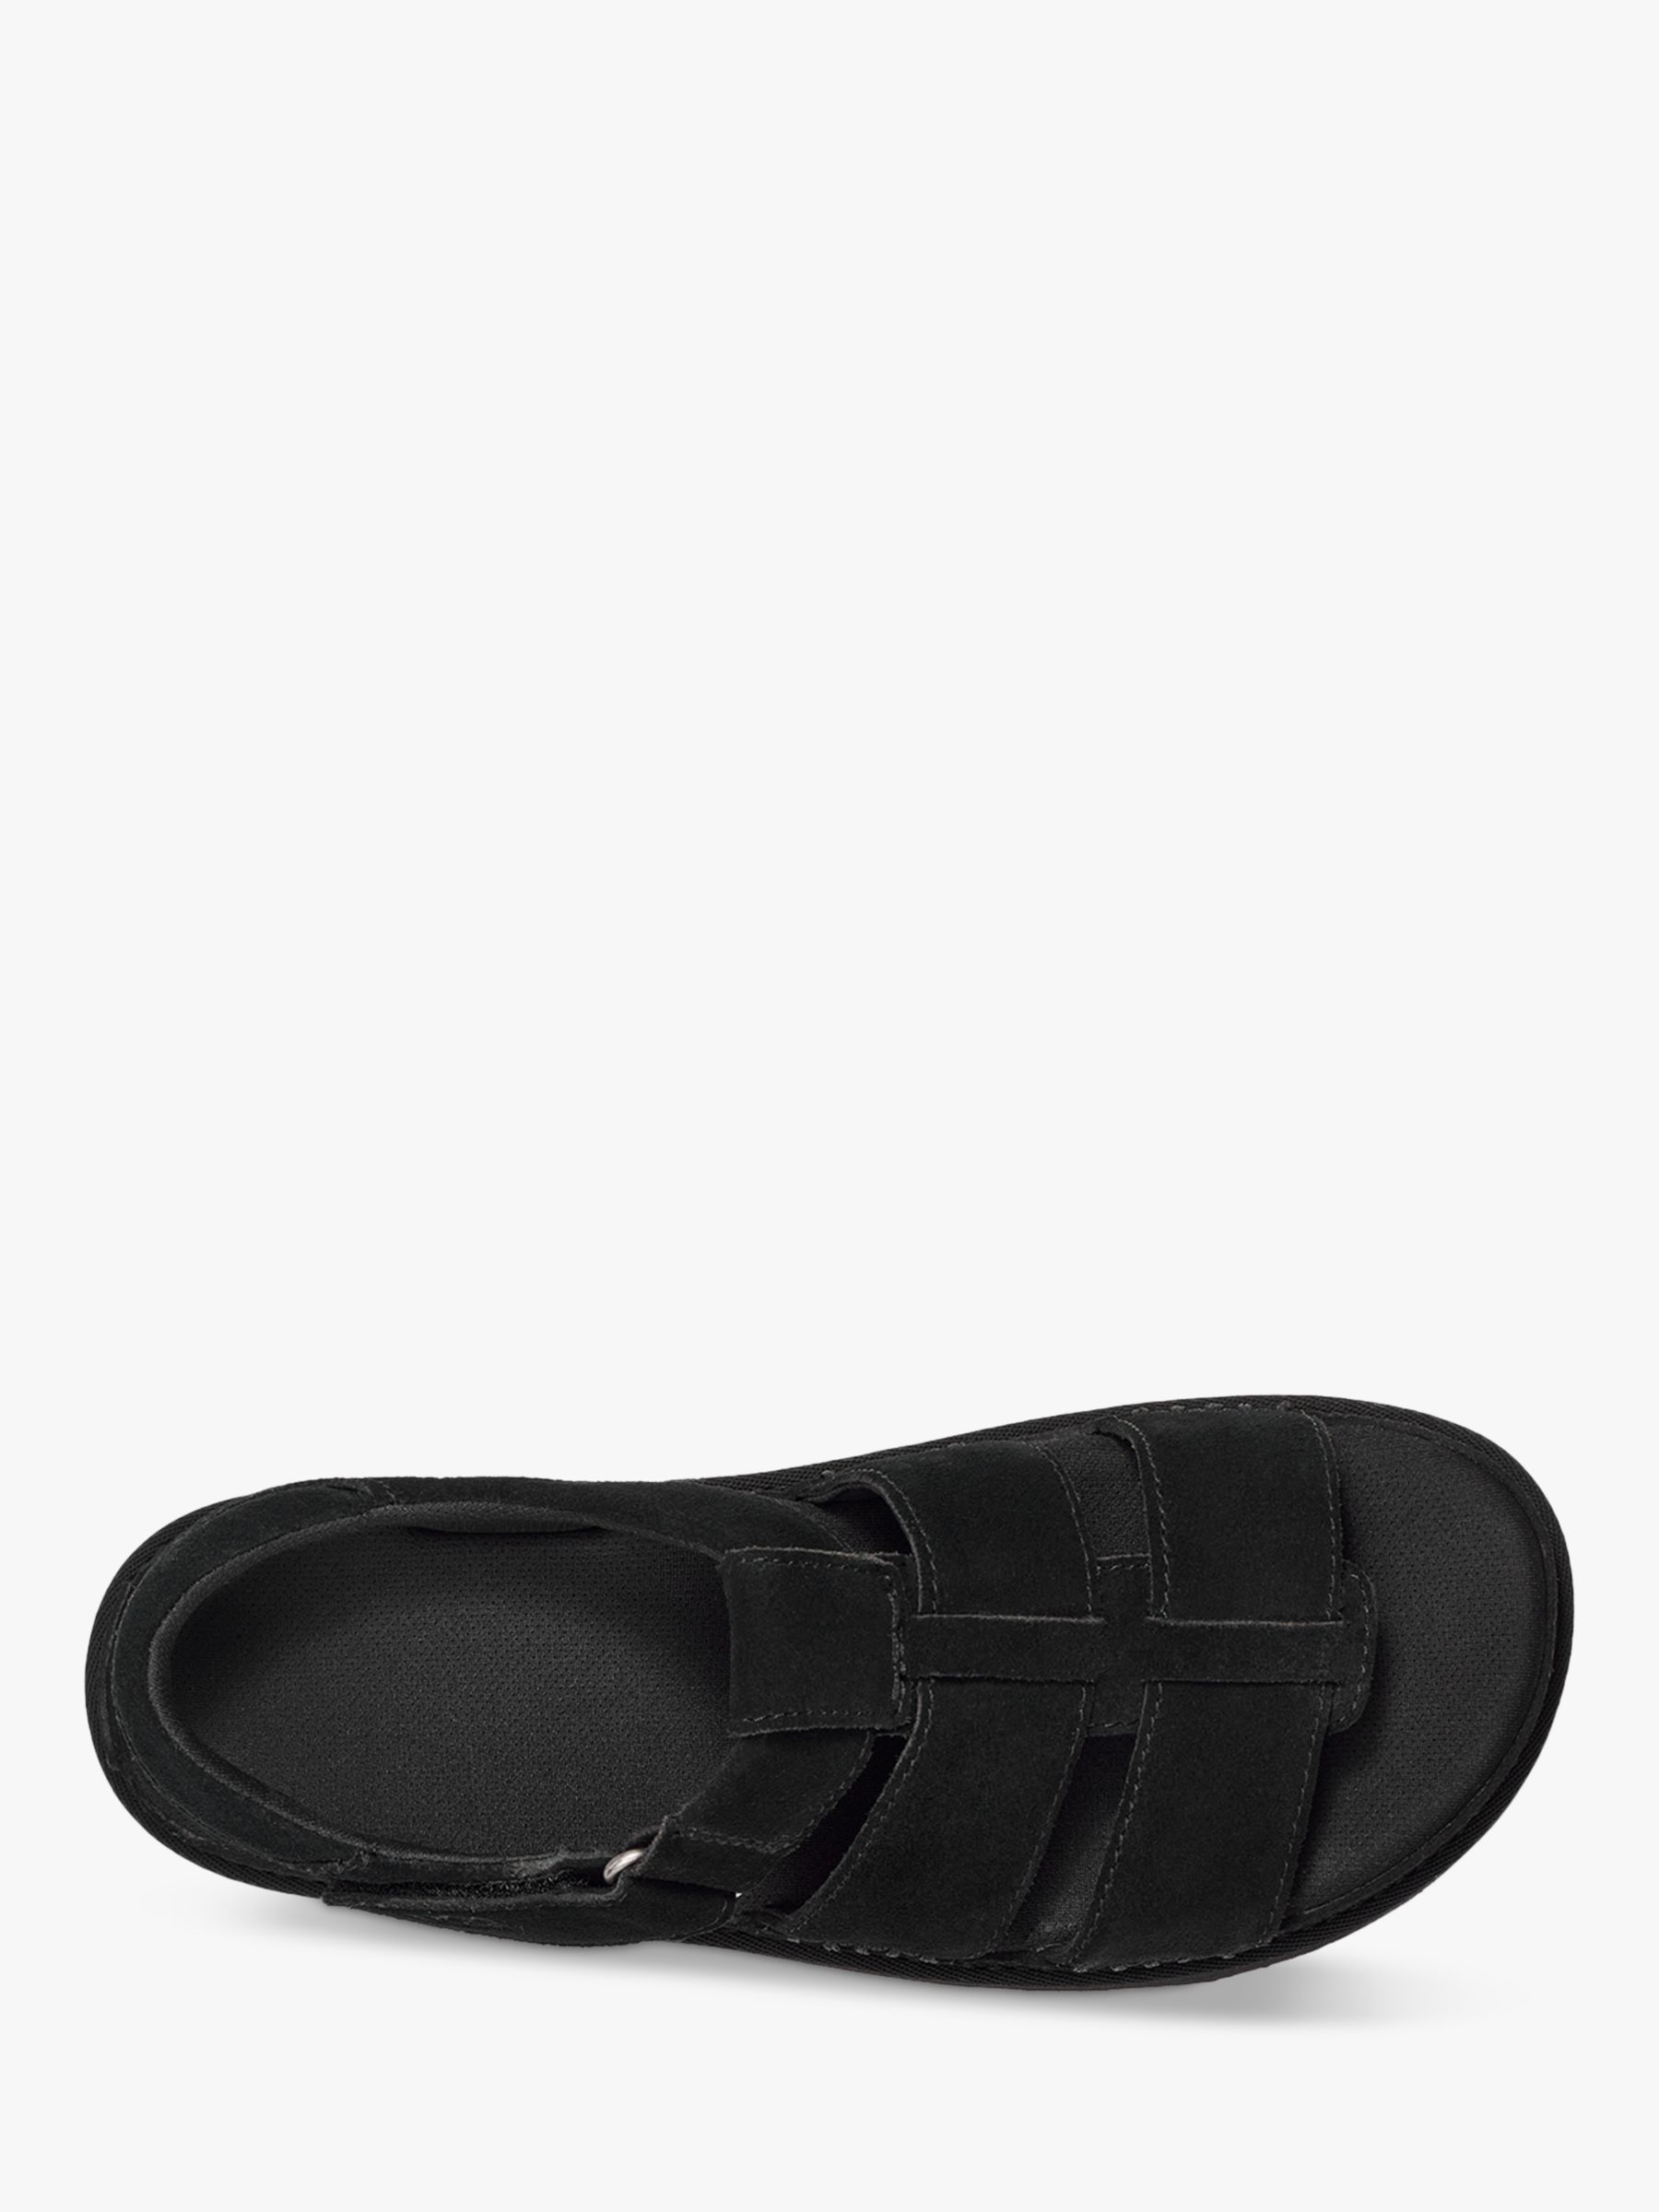 Buy UGG Goldenstar Suede Platform Sandals Online at johnlewis.com